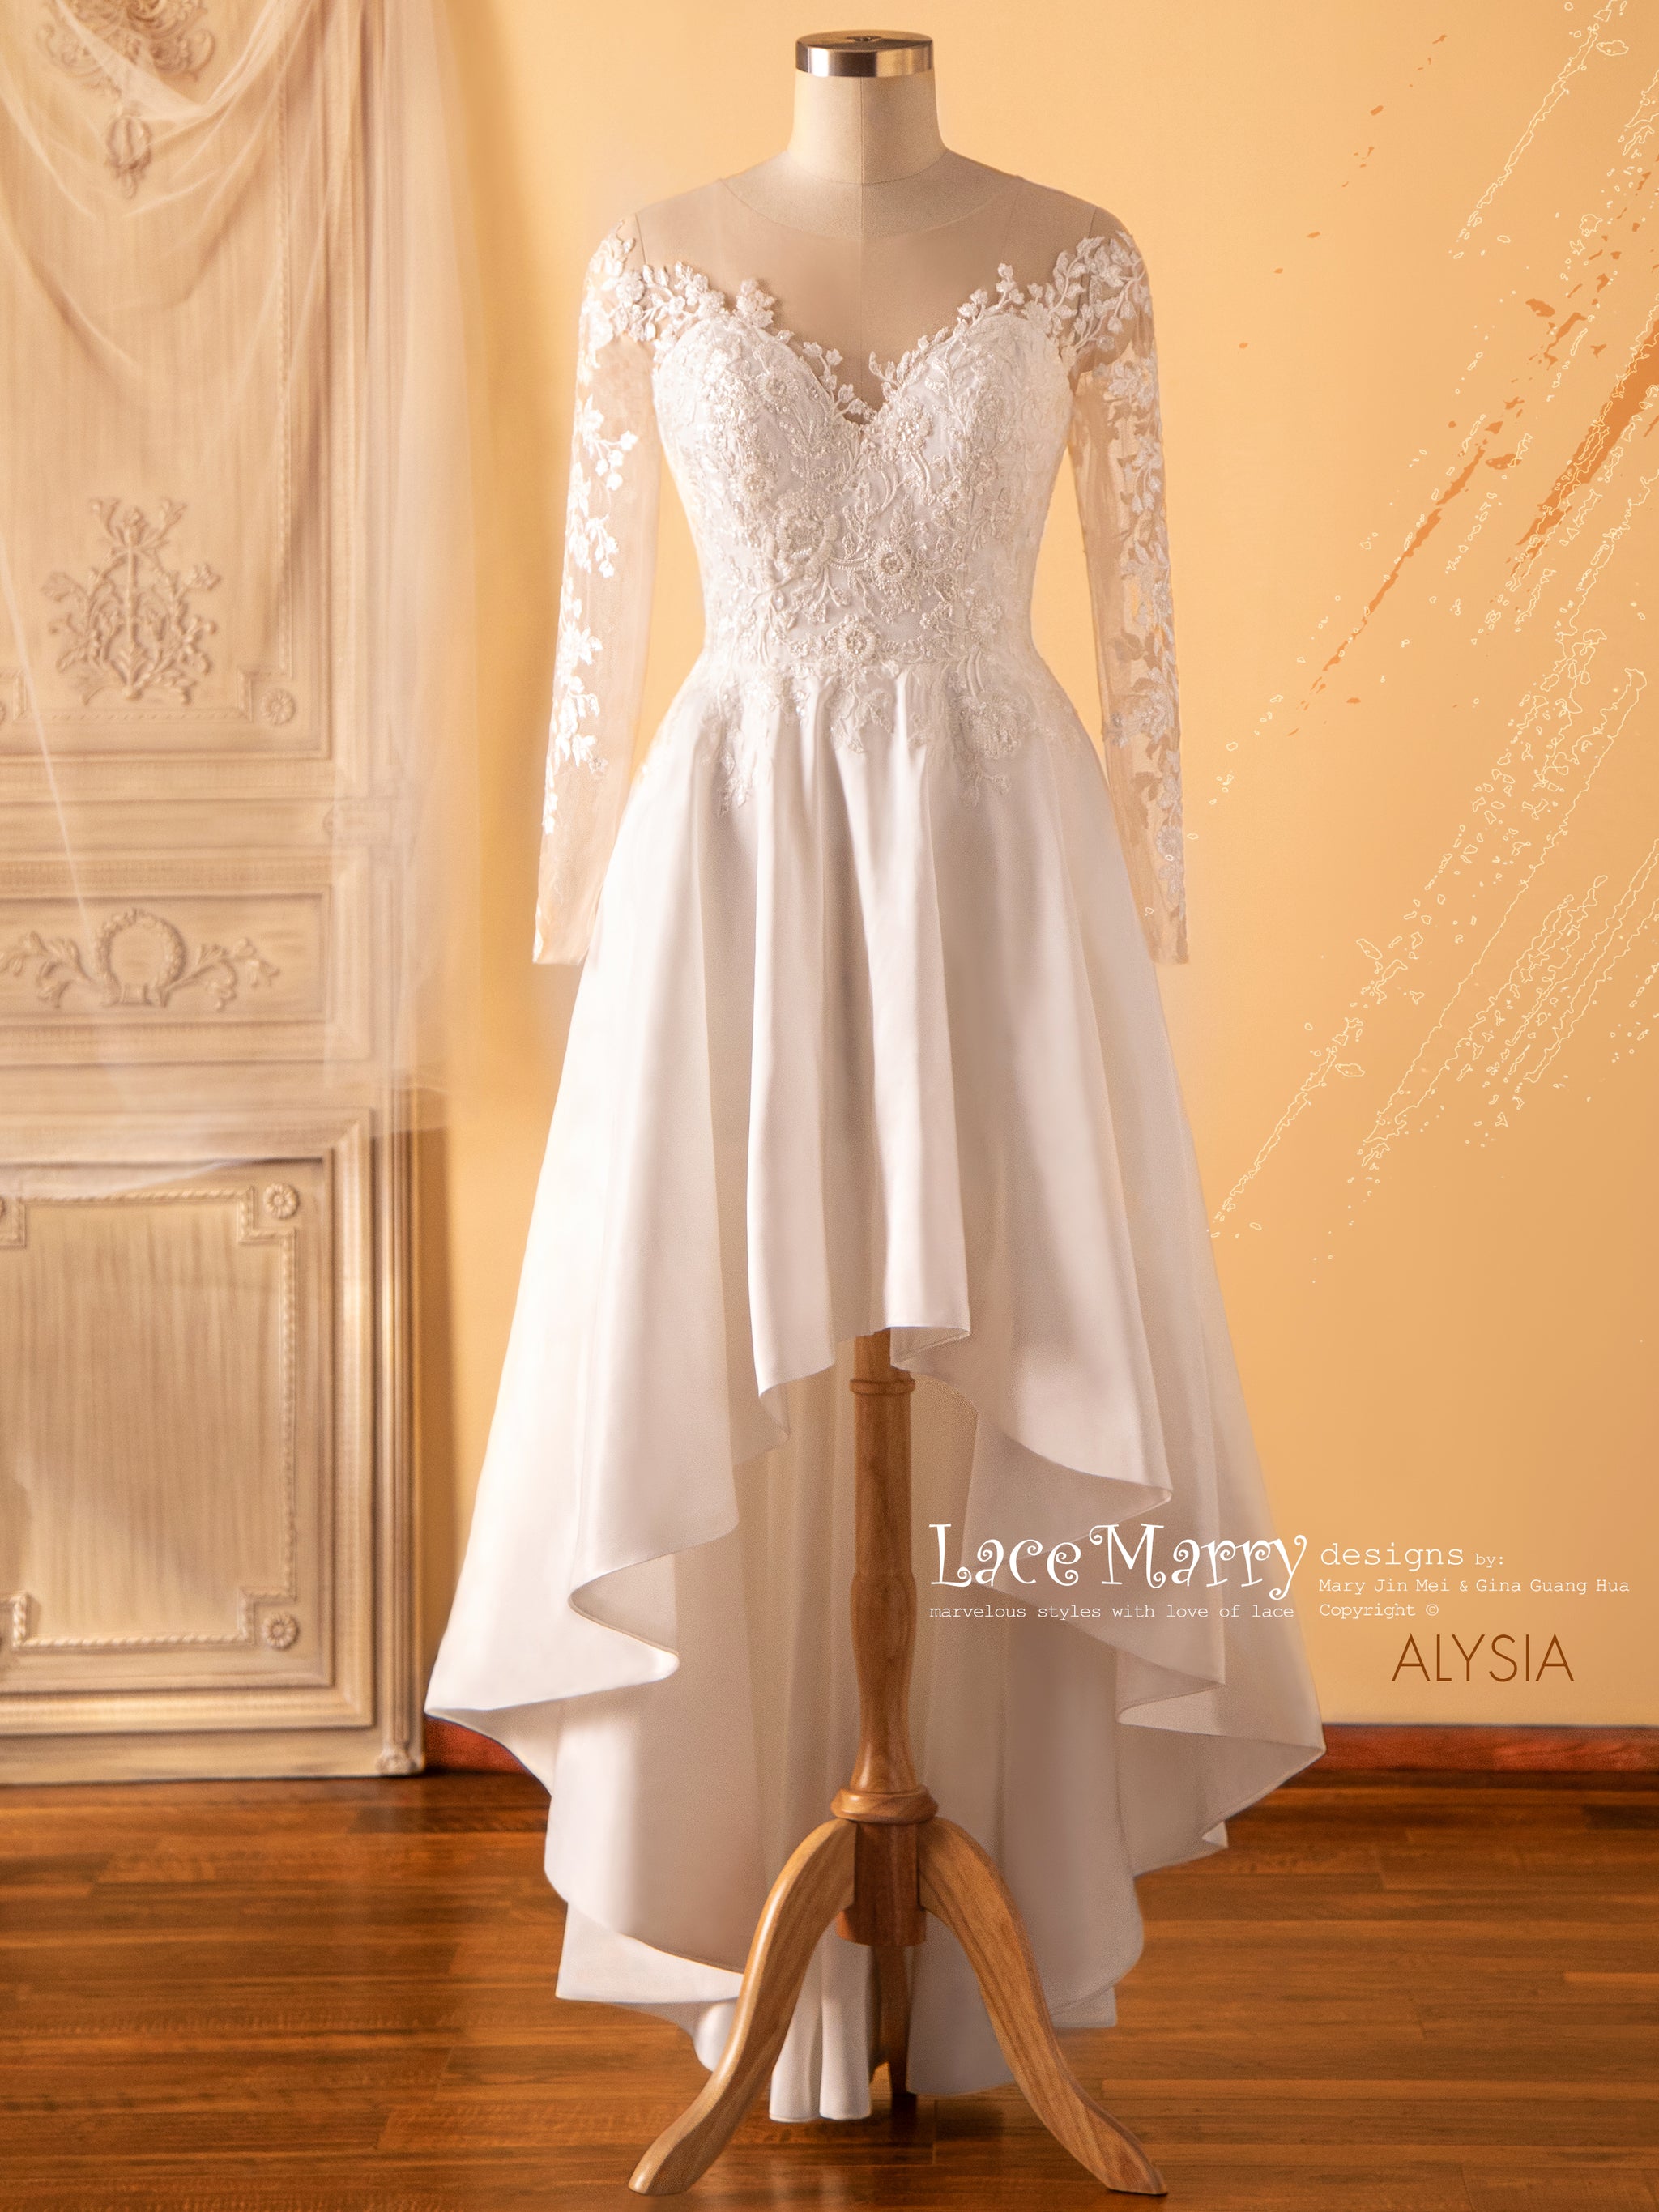 White skirt with long front Zipper, Custom Fit, Handmade, Fully